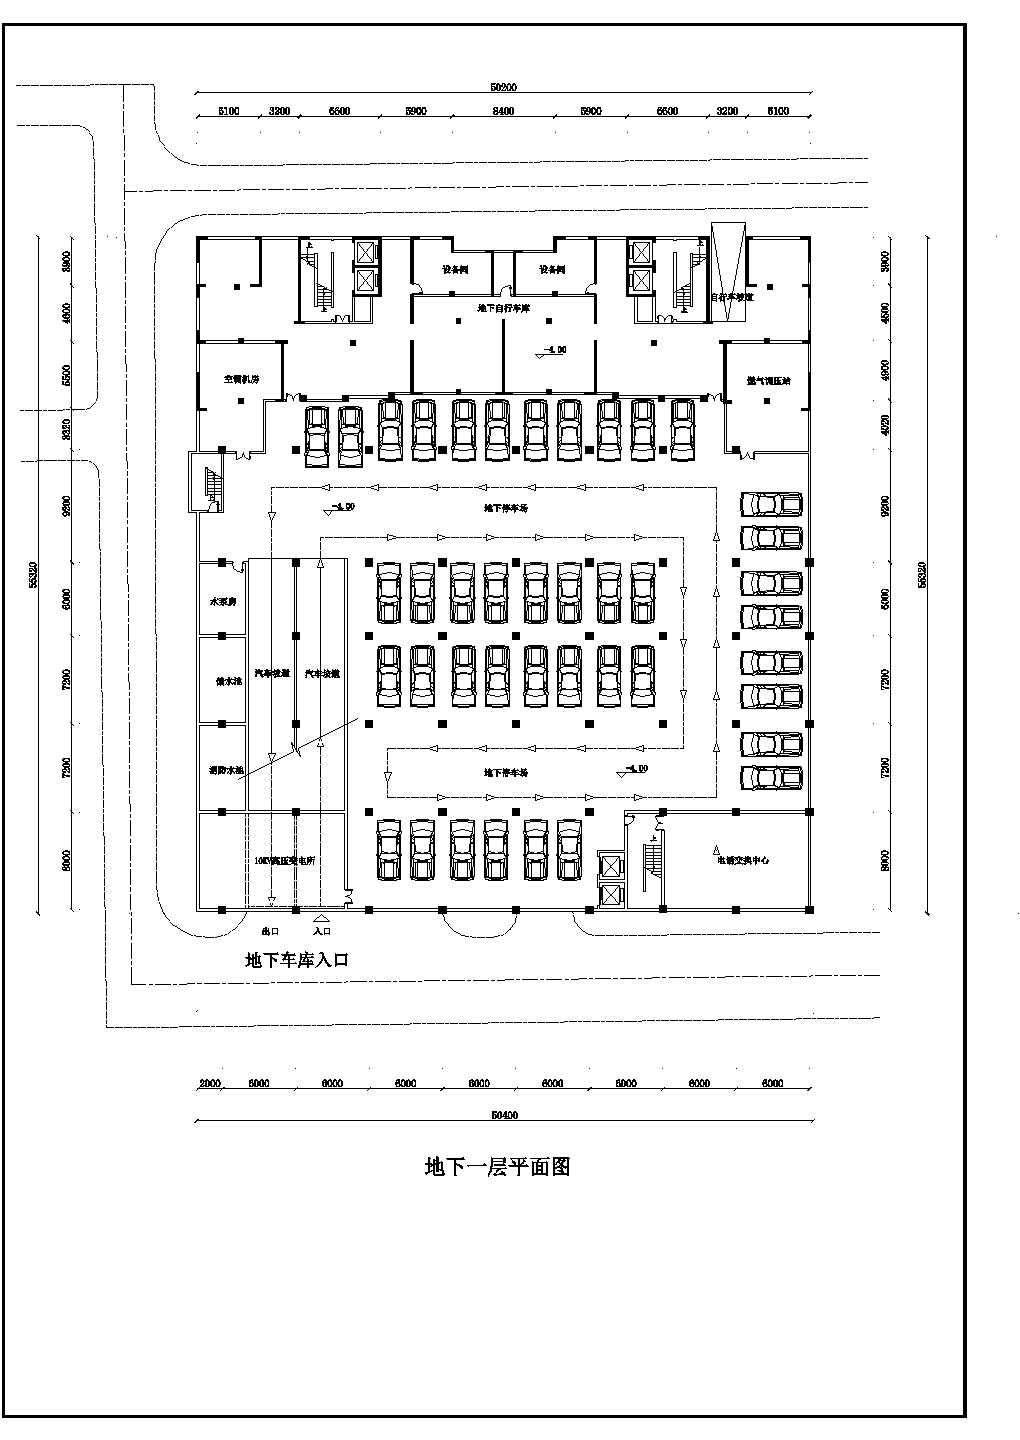 商场：长55.32米 宽50.2米 -1+4层某大型商场建筑平面设计方案图